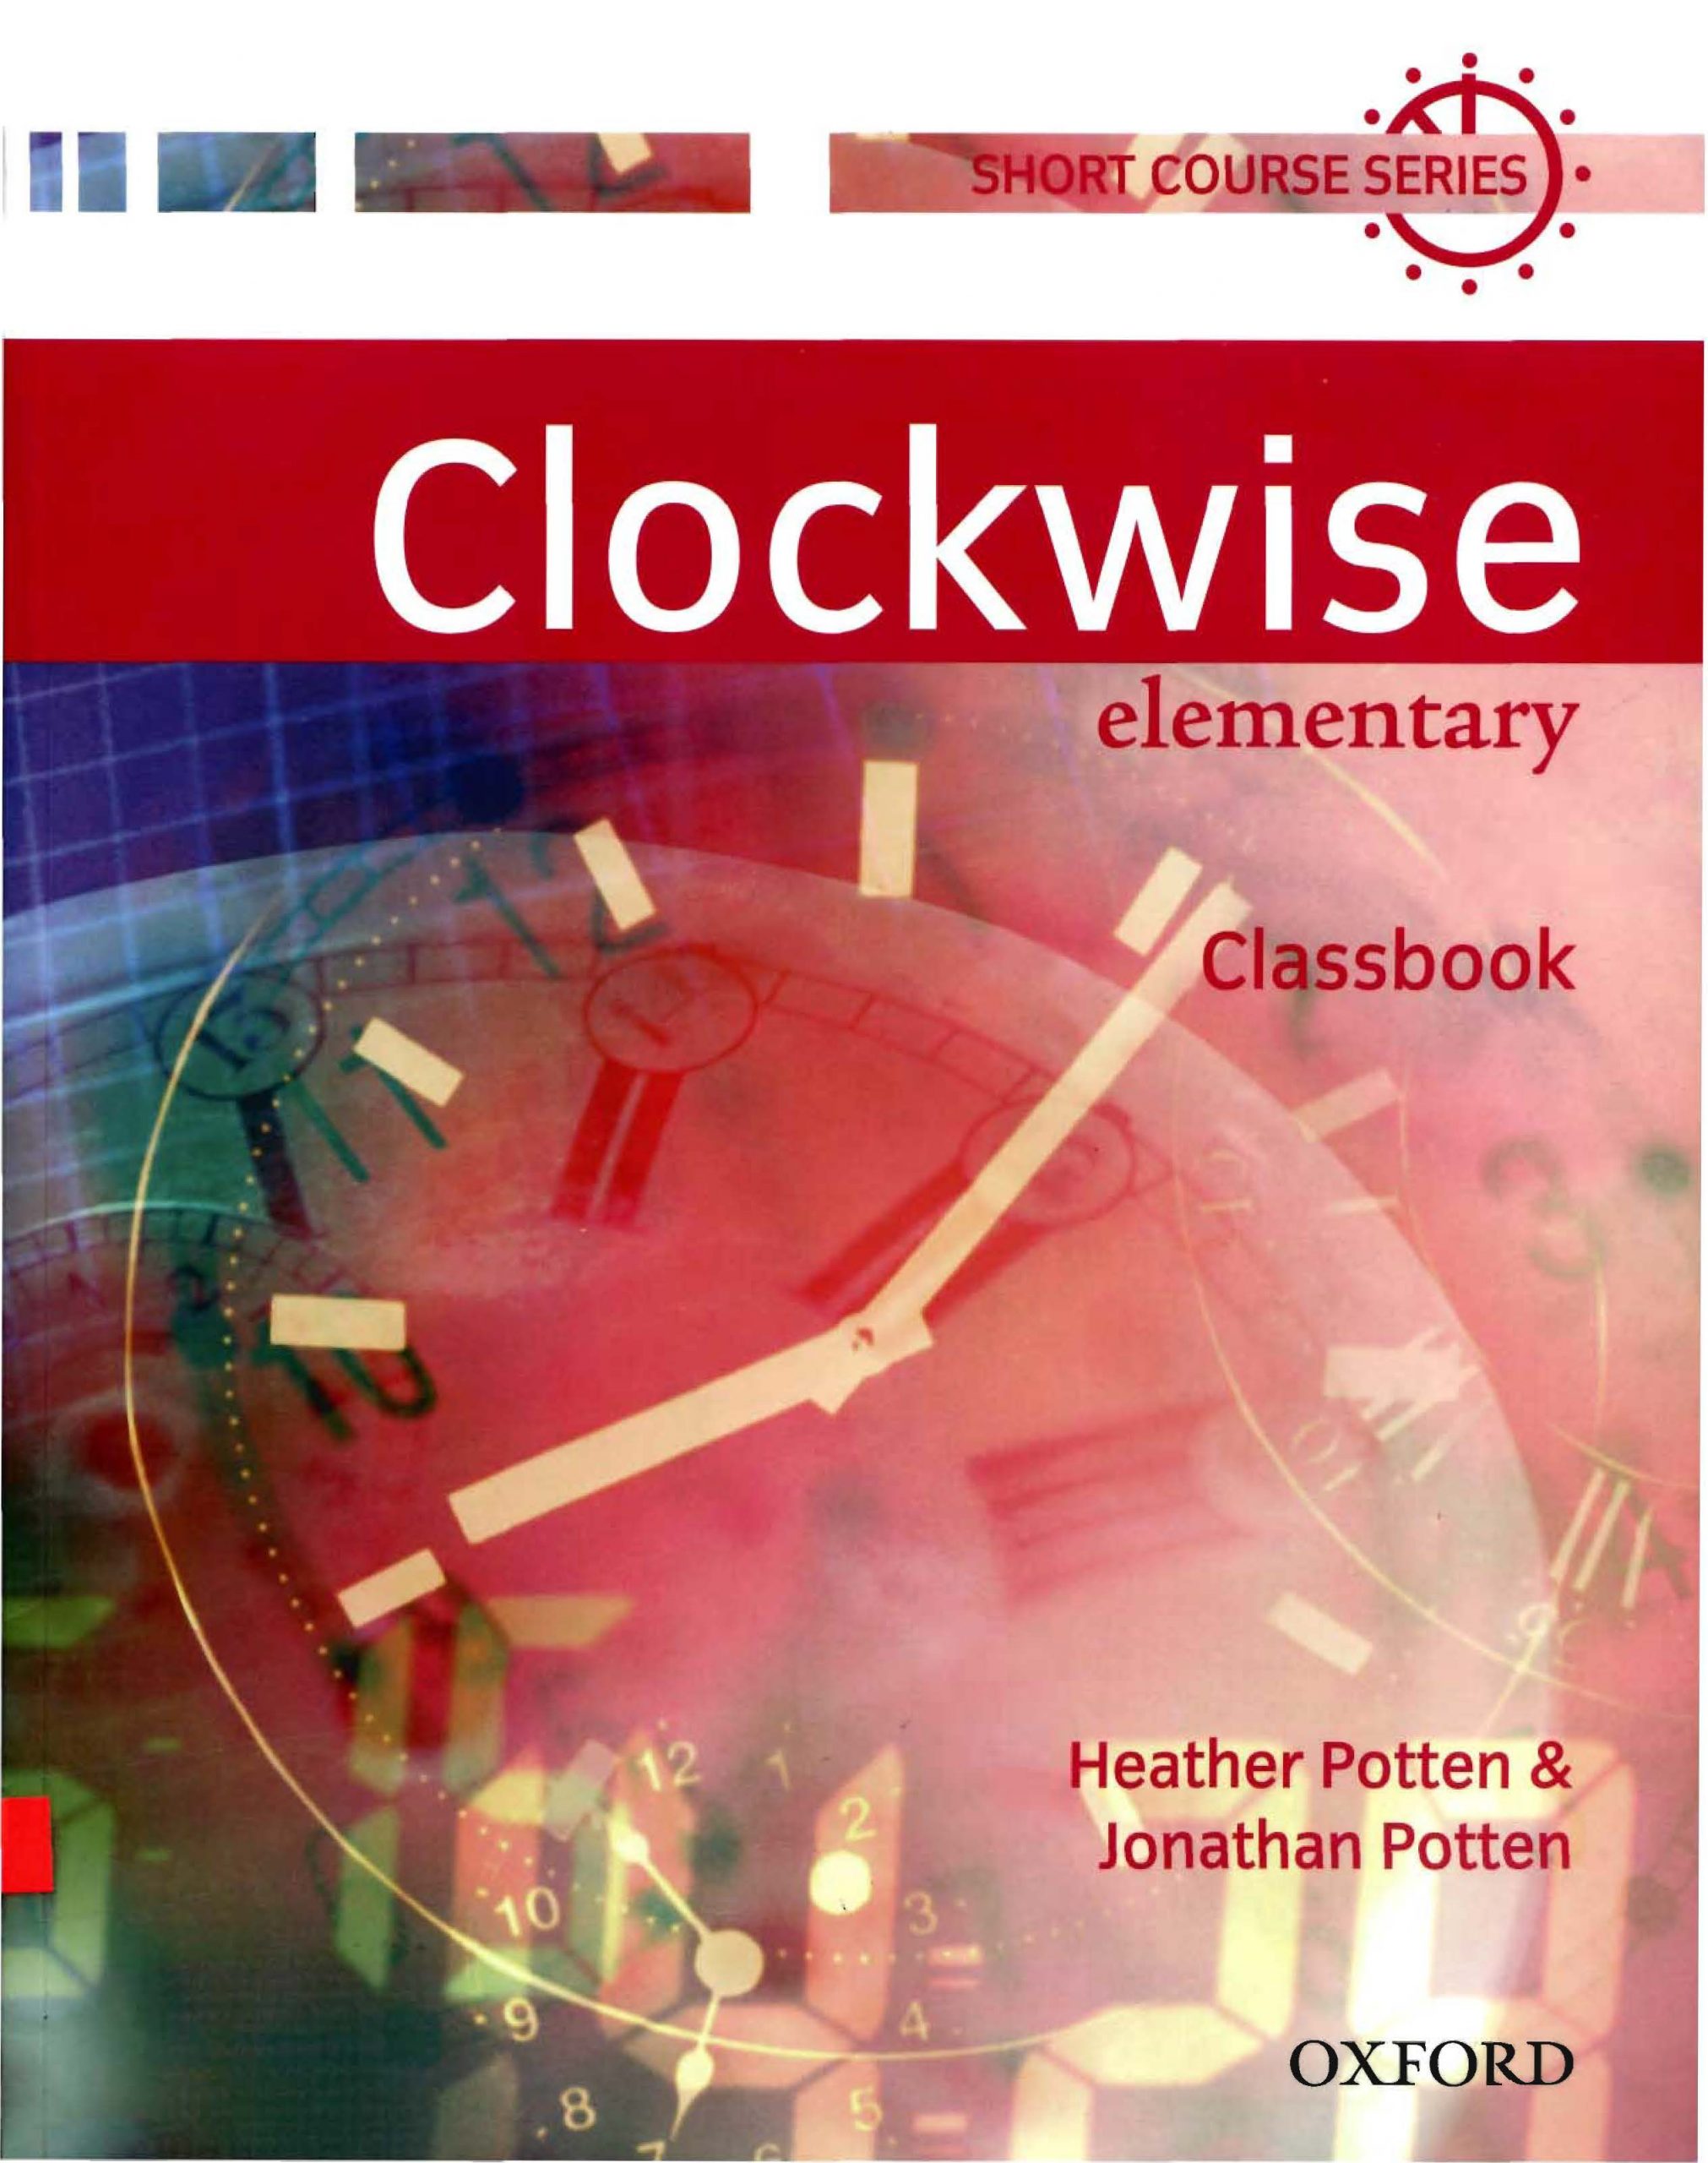 Hà　Elementary　Anh　tiếng　Nội　xoắn　Sách]　Sách　gáy　giấy　Sách　Clockwise　Classbook